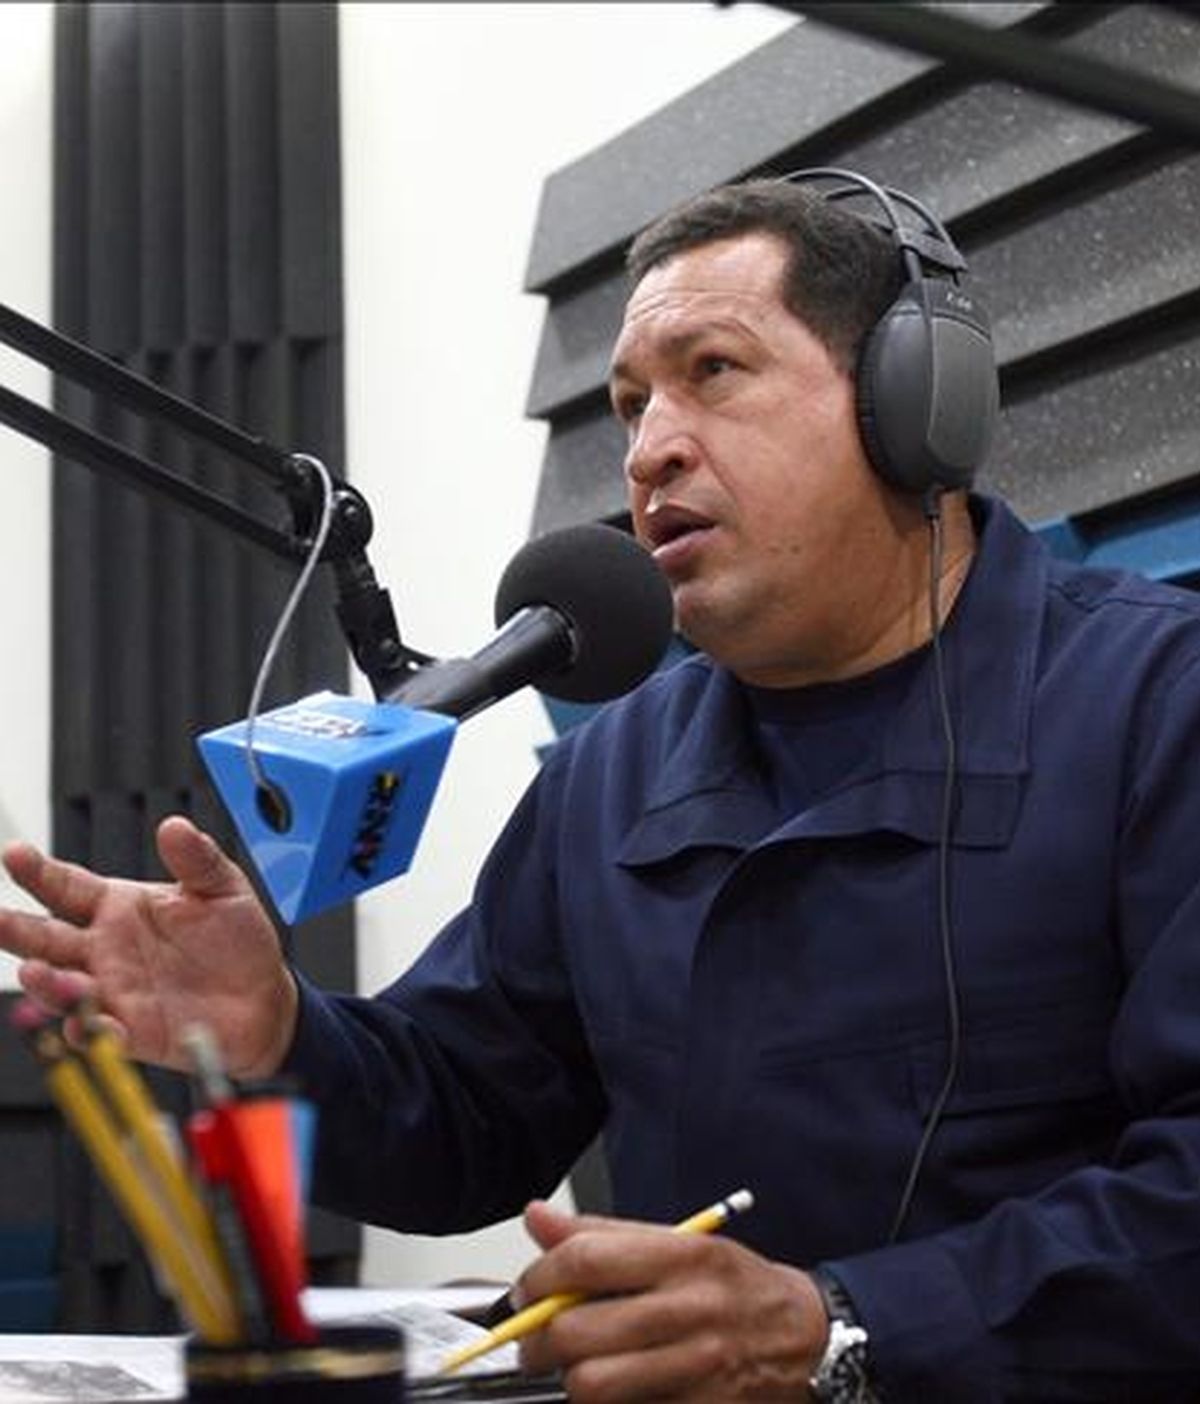 Fotografía de archivo del presidente venezolano Hugo Chávez tomada el 8 de febrero de 2010 en Caracas (Venezuela) durante su participación en el programa "De repente con Chávez". EFE/Prensa Miraflores/Archivo